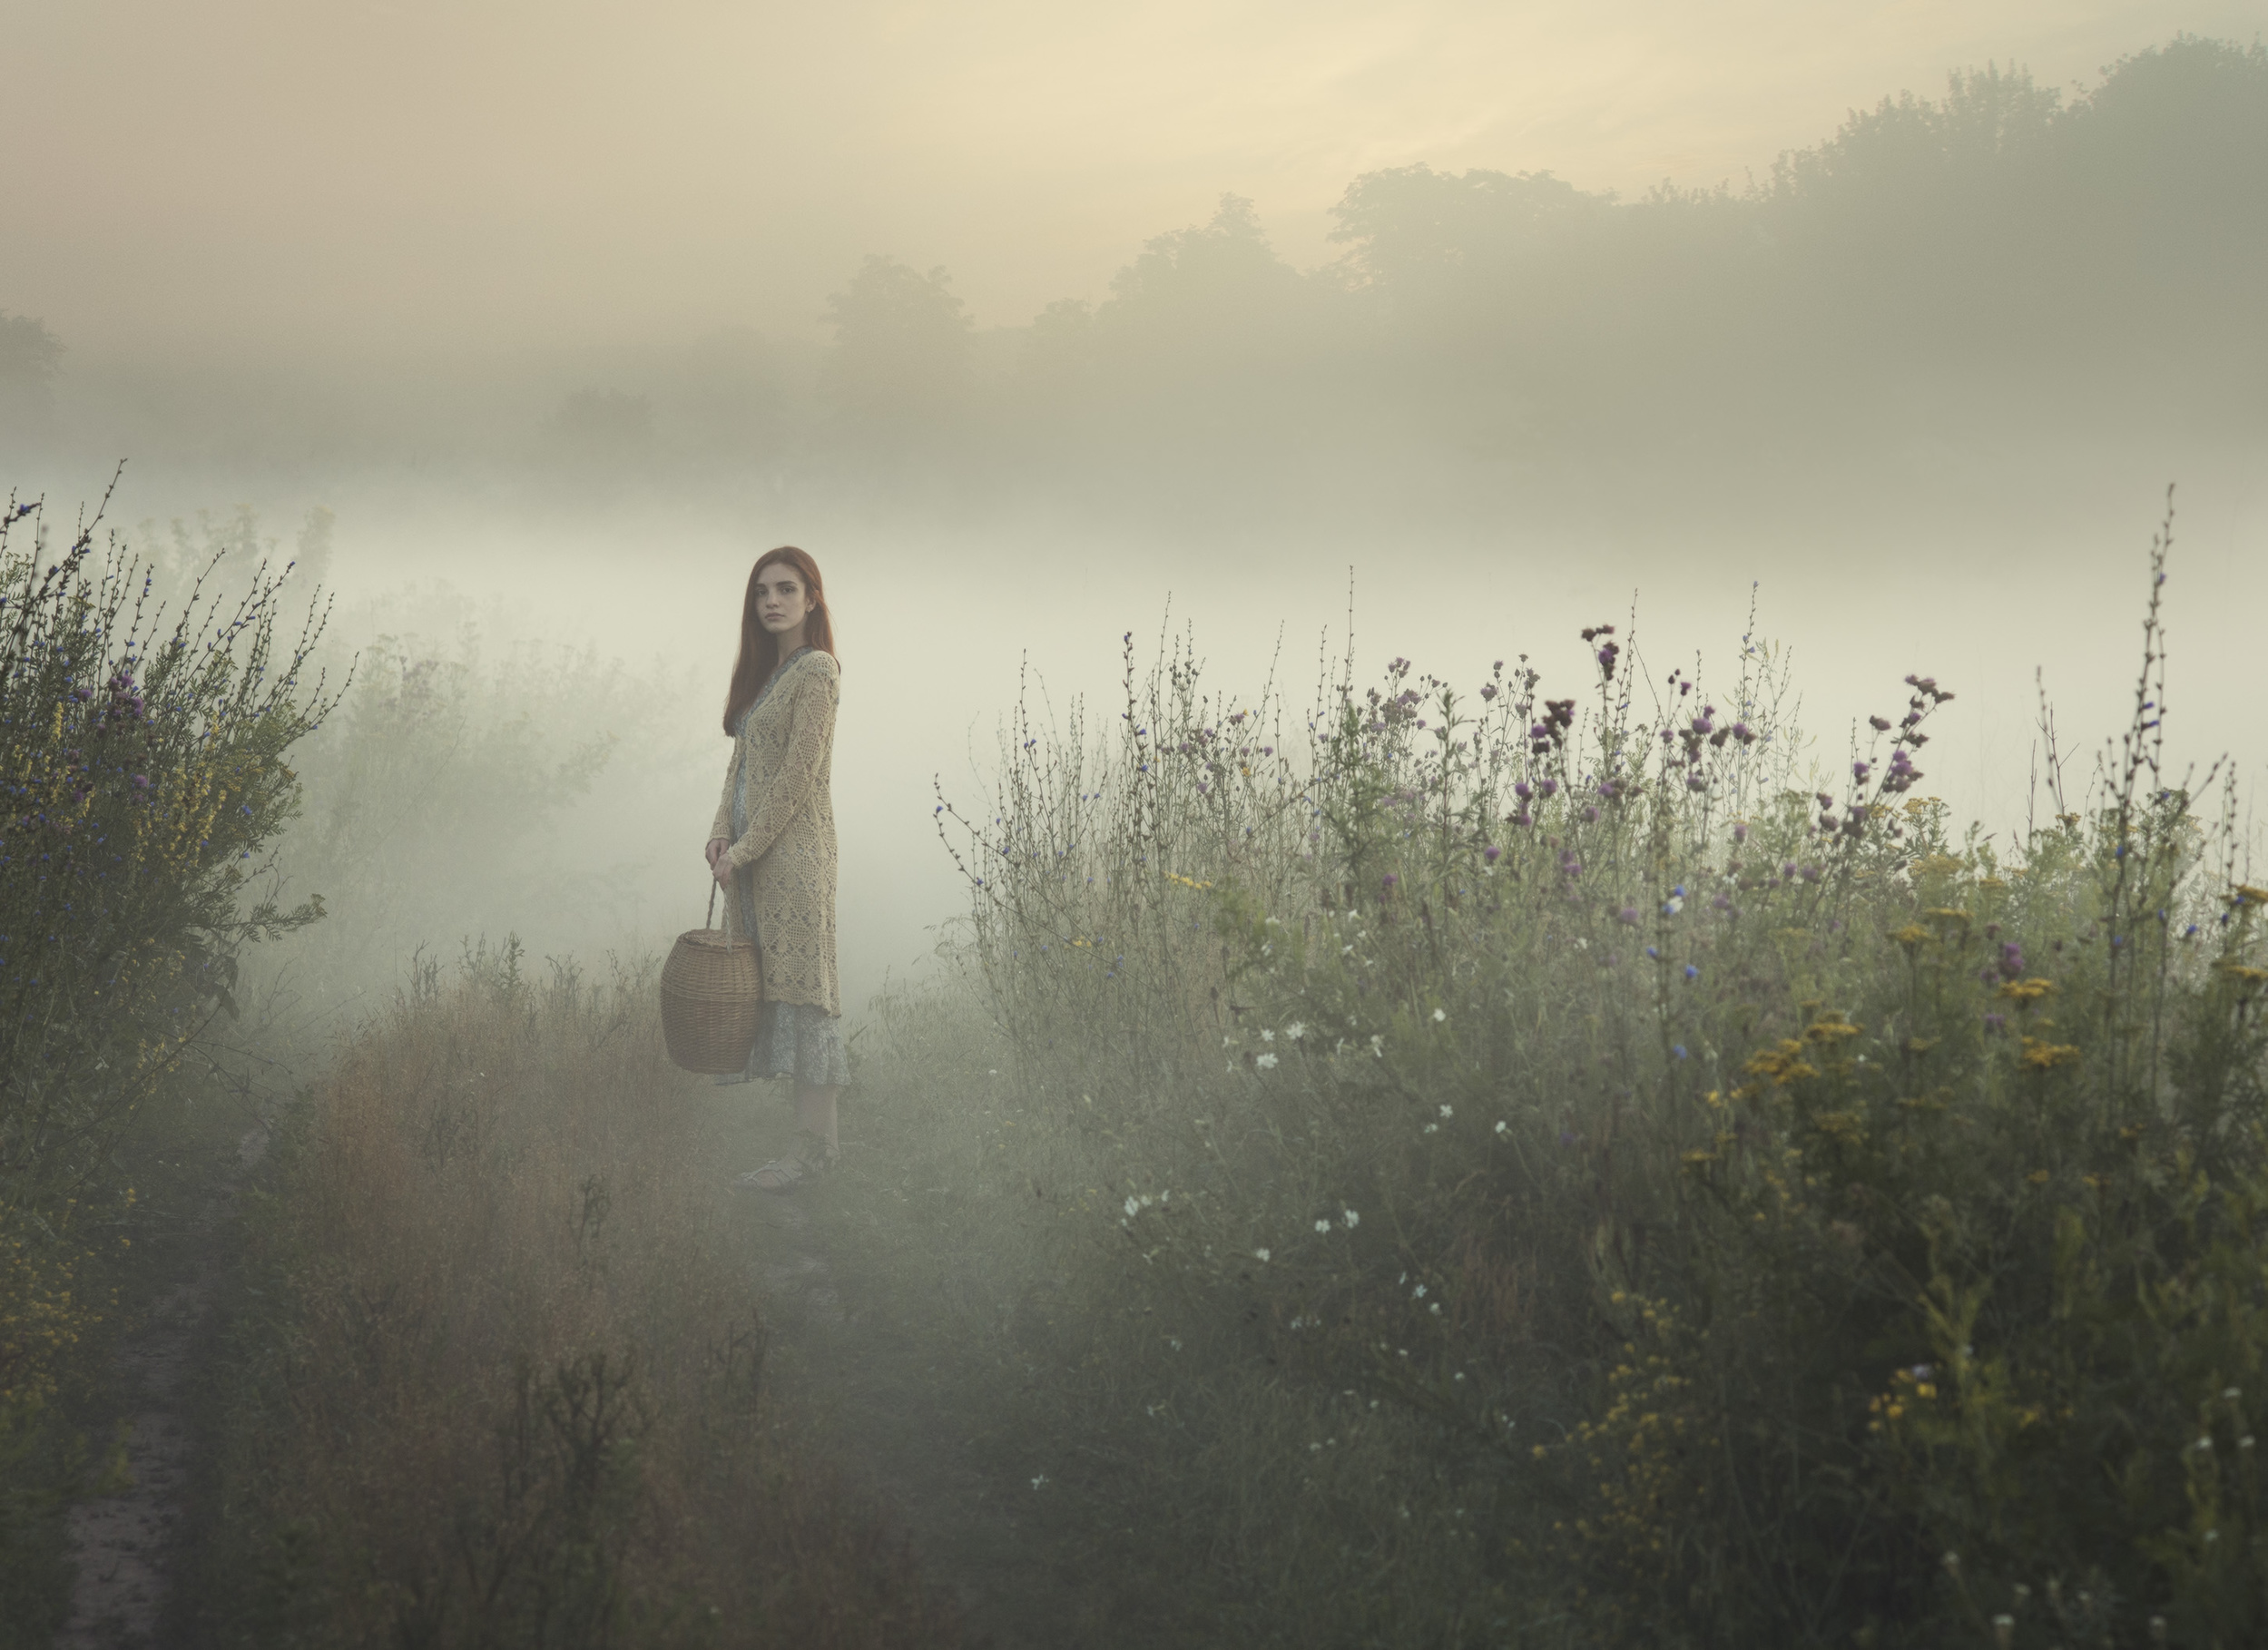 Как там живется сквозь жизни туман песня. Фотограф Дэвид Дубницкий. Дэвид Дубницкий деревня дождь.